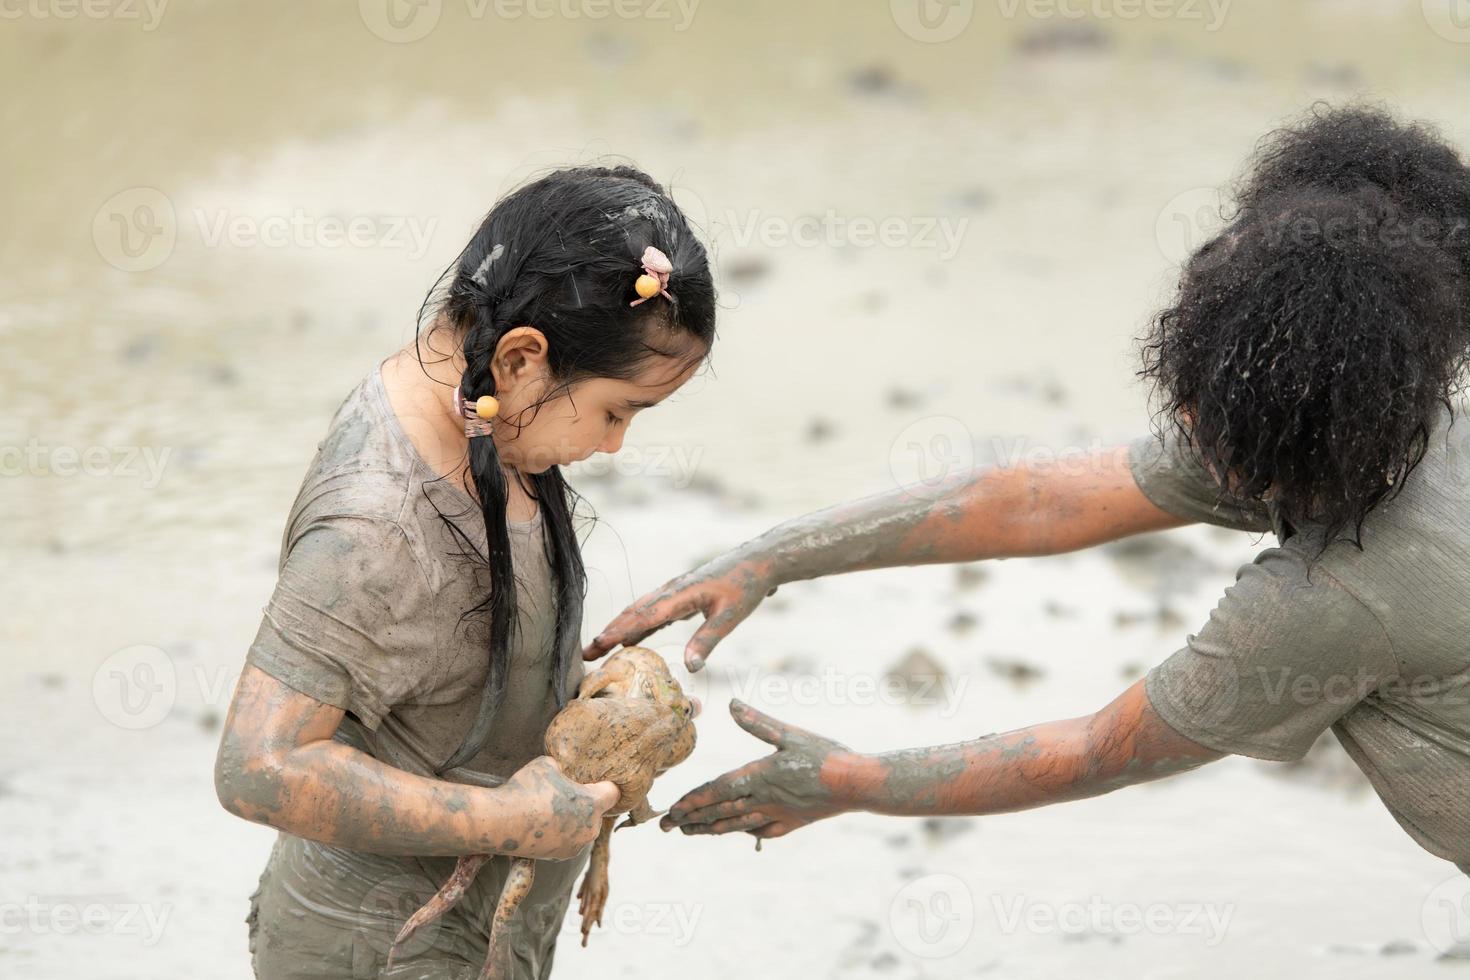 kinderen hebben pret spelen in de modder in de gemeenschap velden en vangen een kikker in een modderig veld. foto